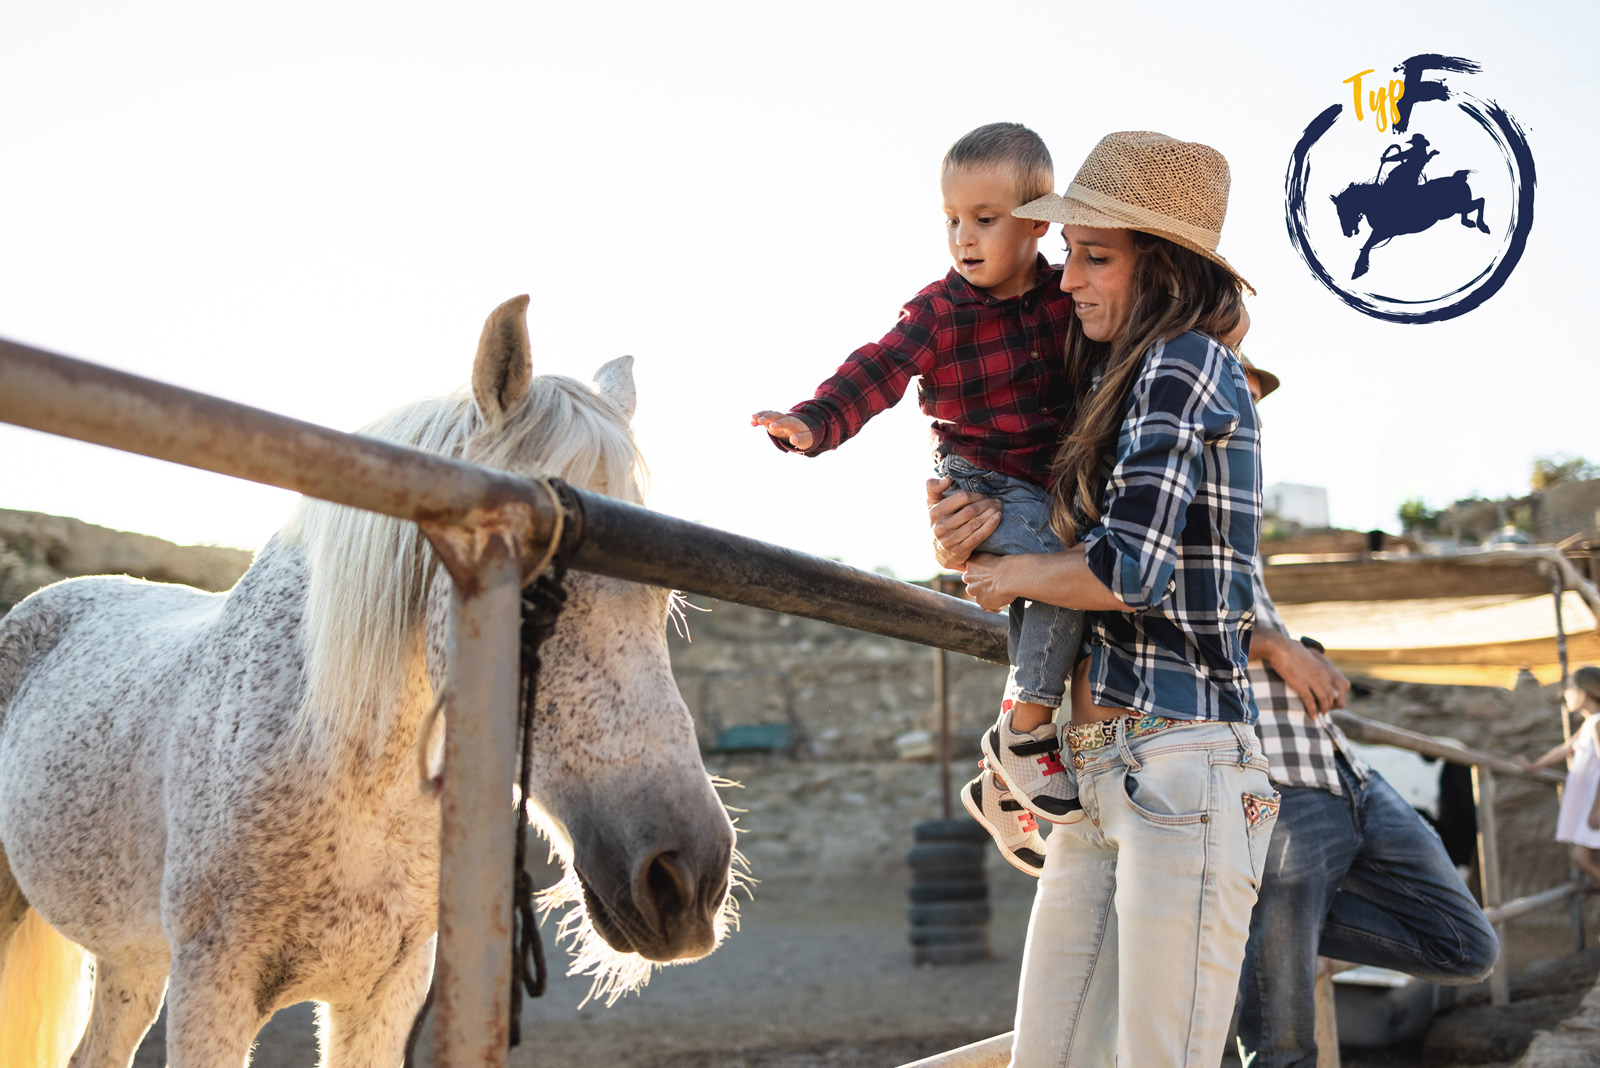 Eine Frau hält einen kleinene Jungen auf dem Arm, der über einen Zaun hinweg ein weisses Pferd steichelt